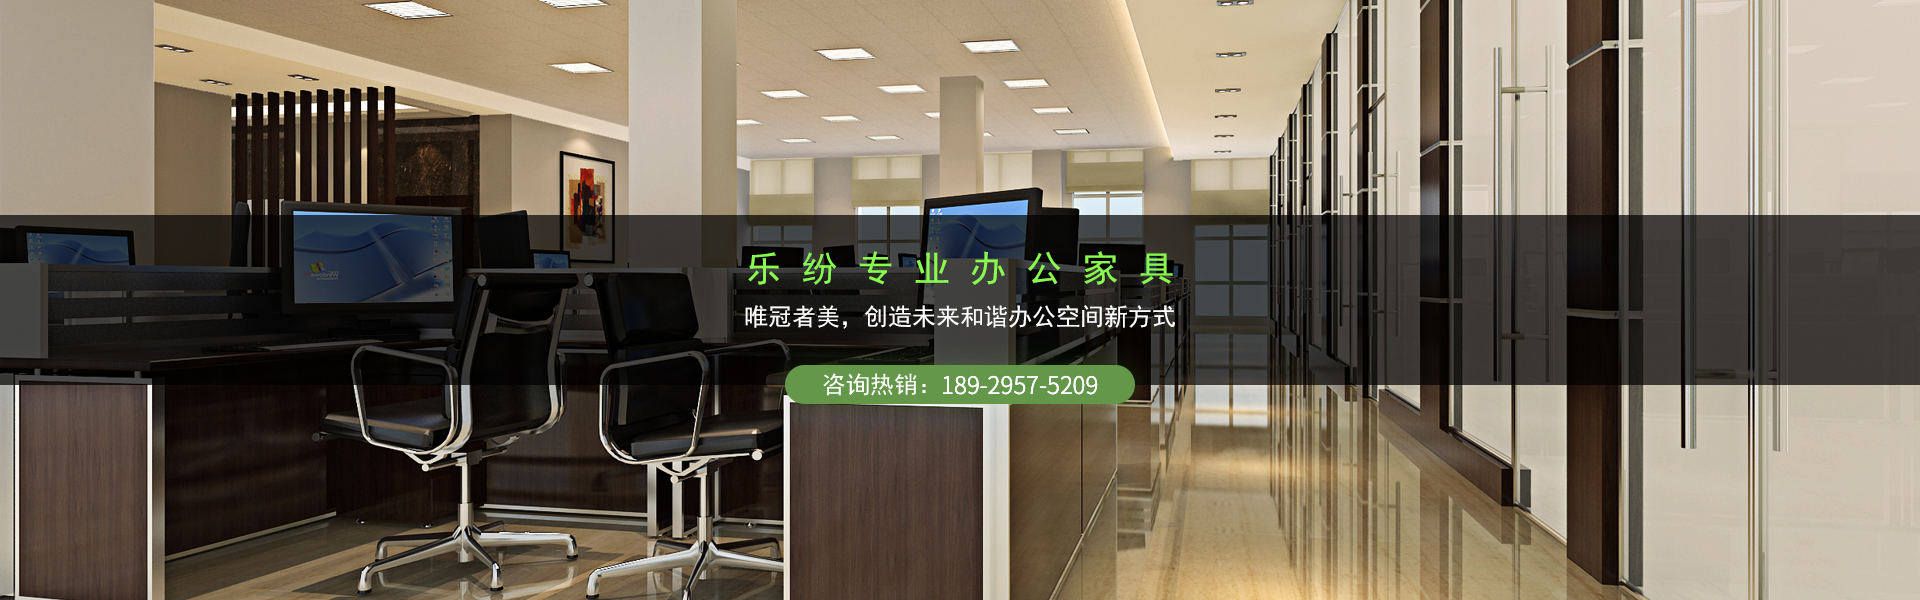 廣州樂紛家具是一家專業辦公室家具生產廠家